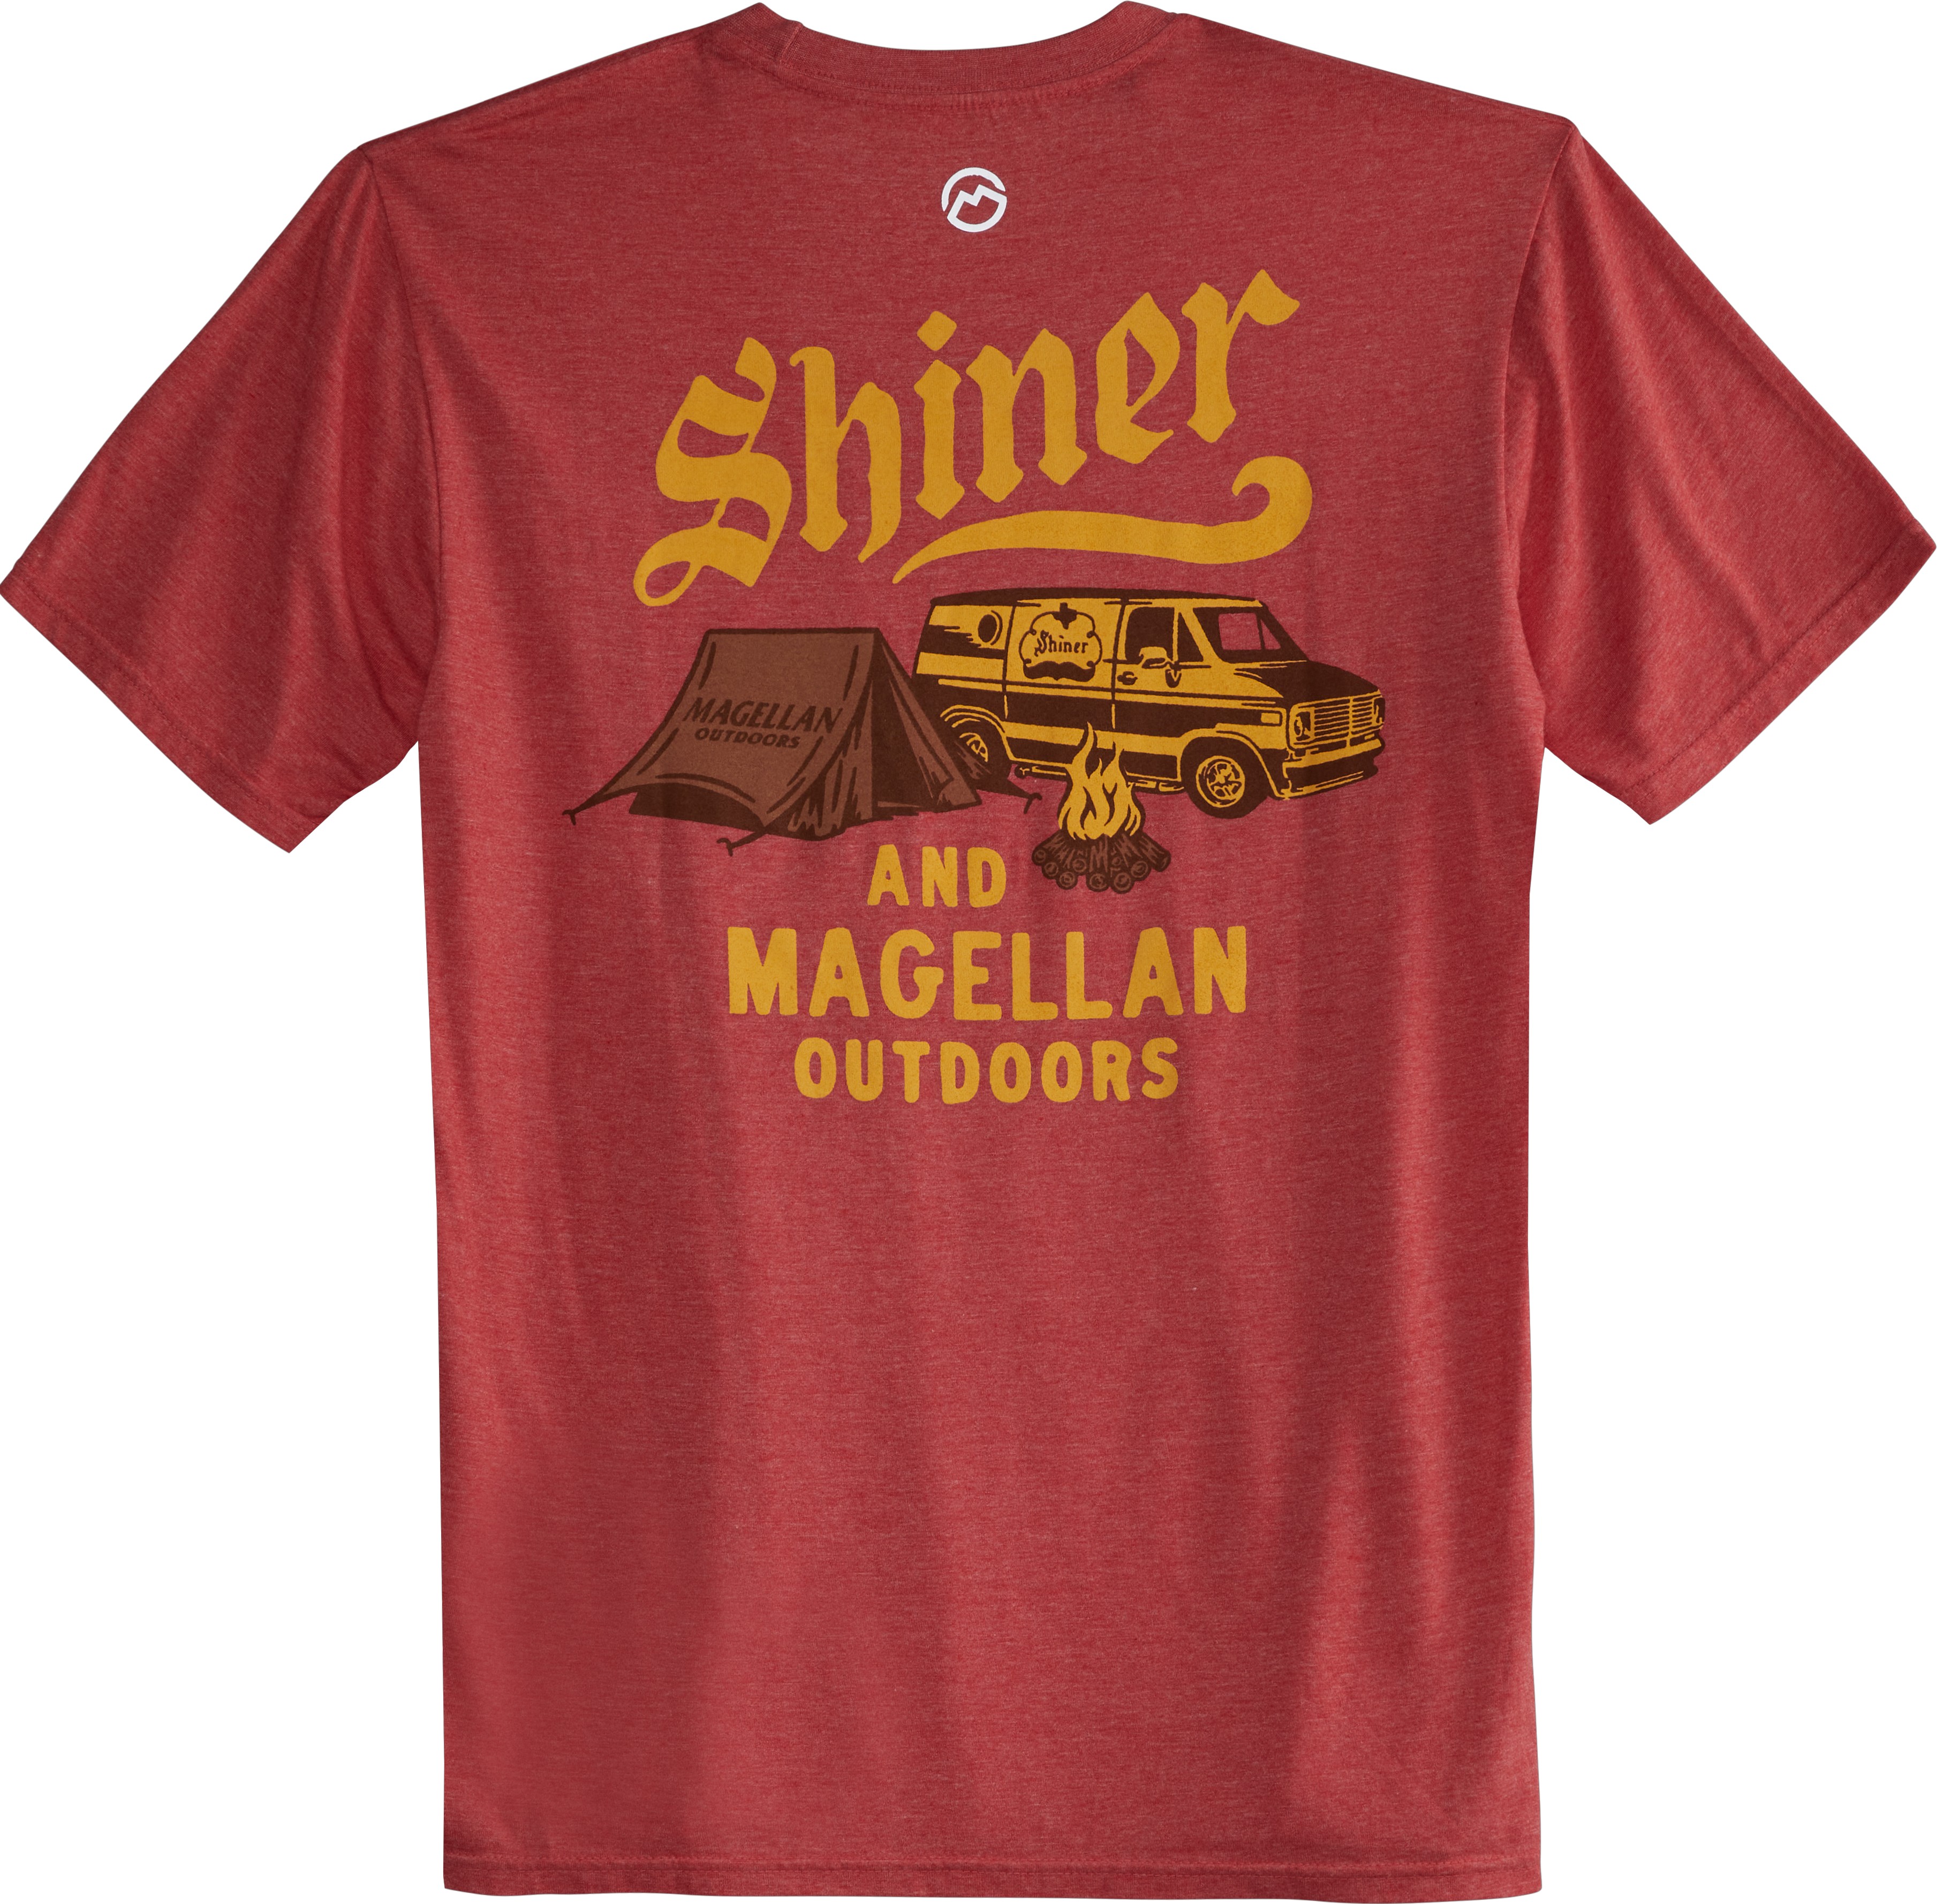 Vintage Shiner-Bock-Beer-Shiner-Texas Logo T-Shirt Active T-Shirt